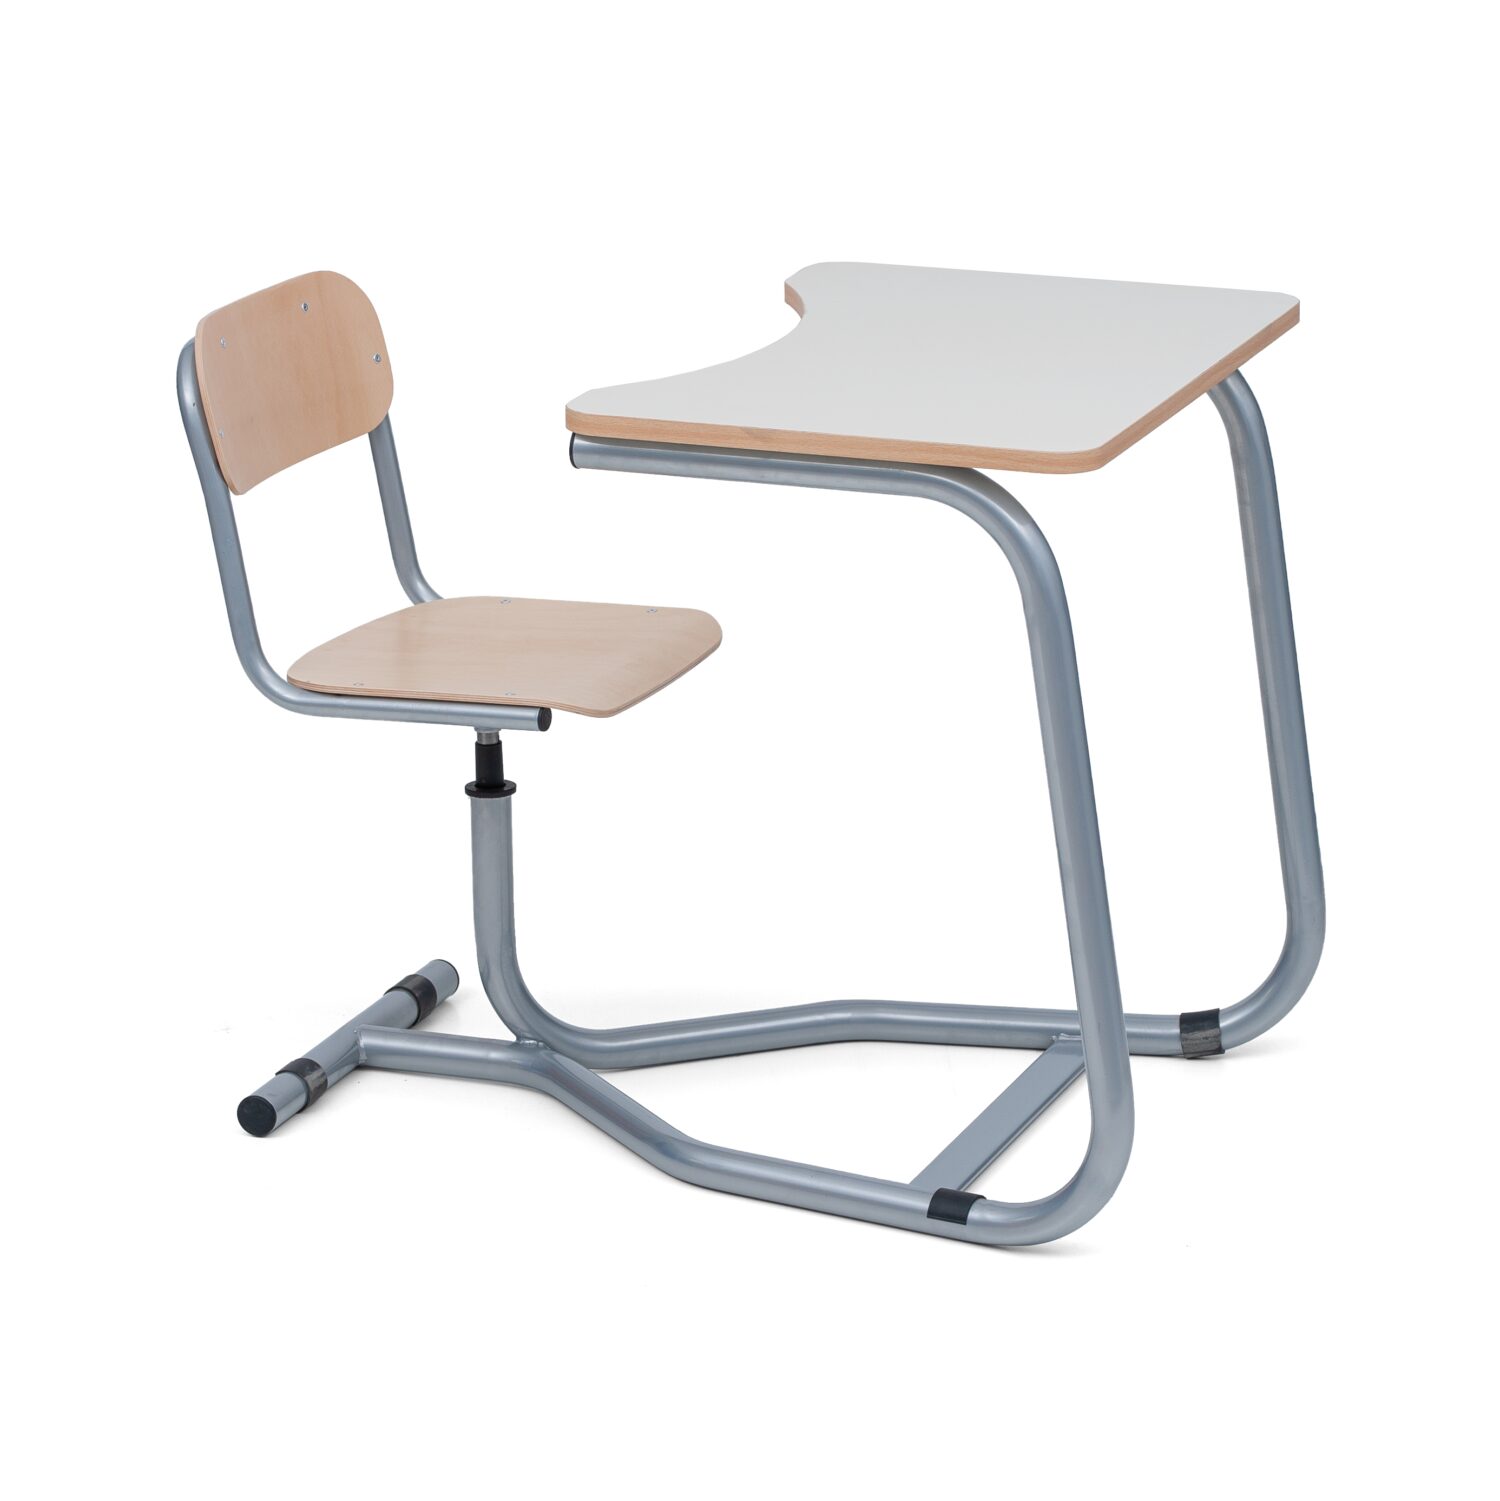 Monosed q scaled tavolo monoblocco con sedia girevole